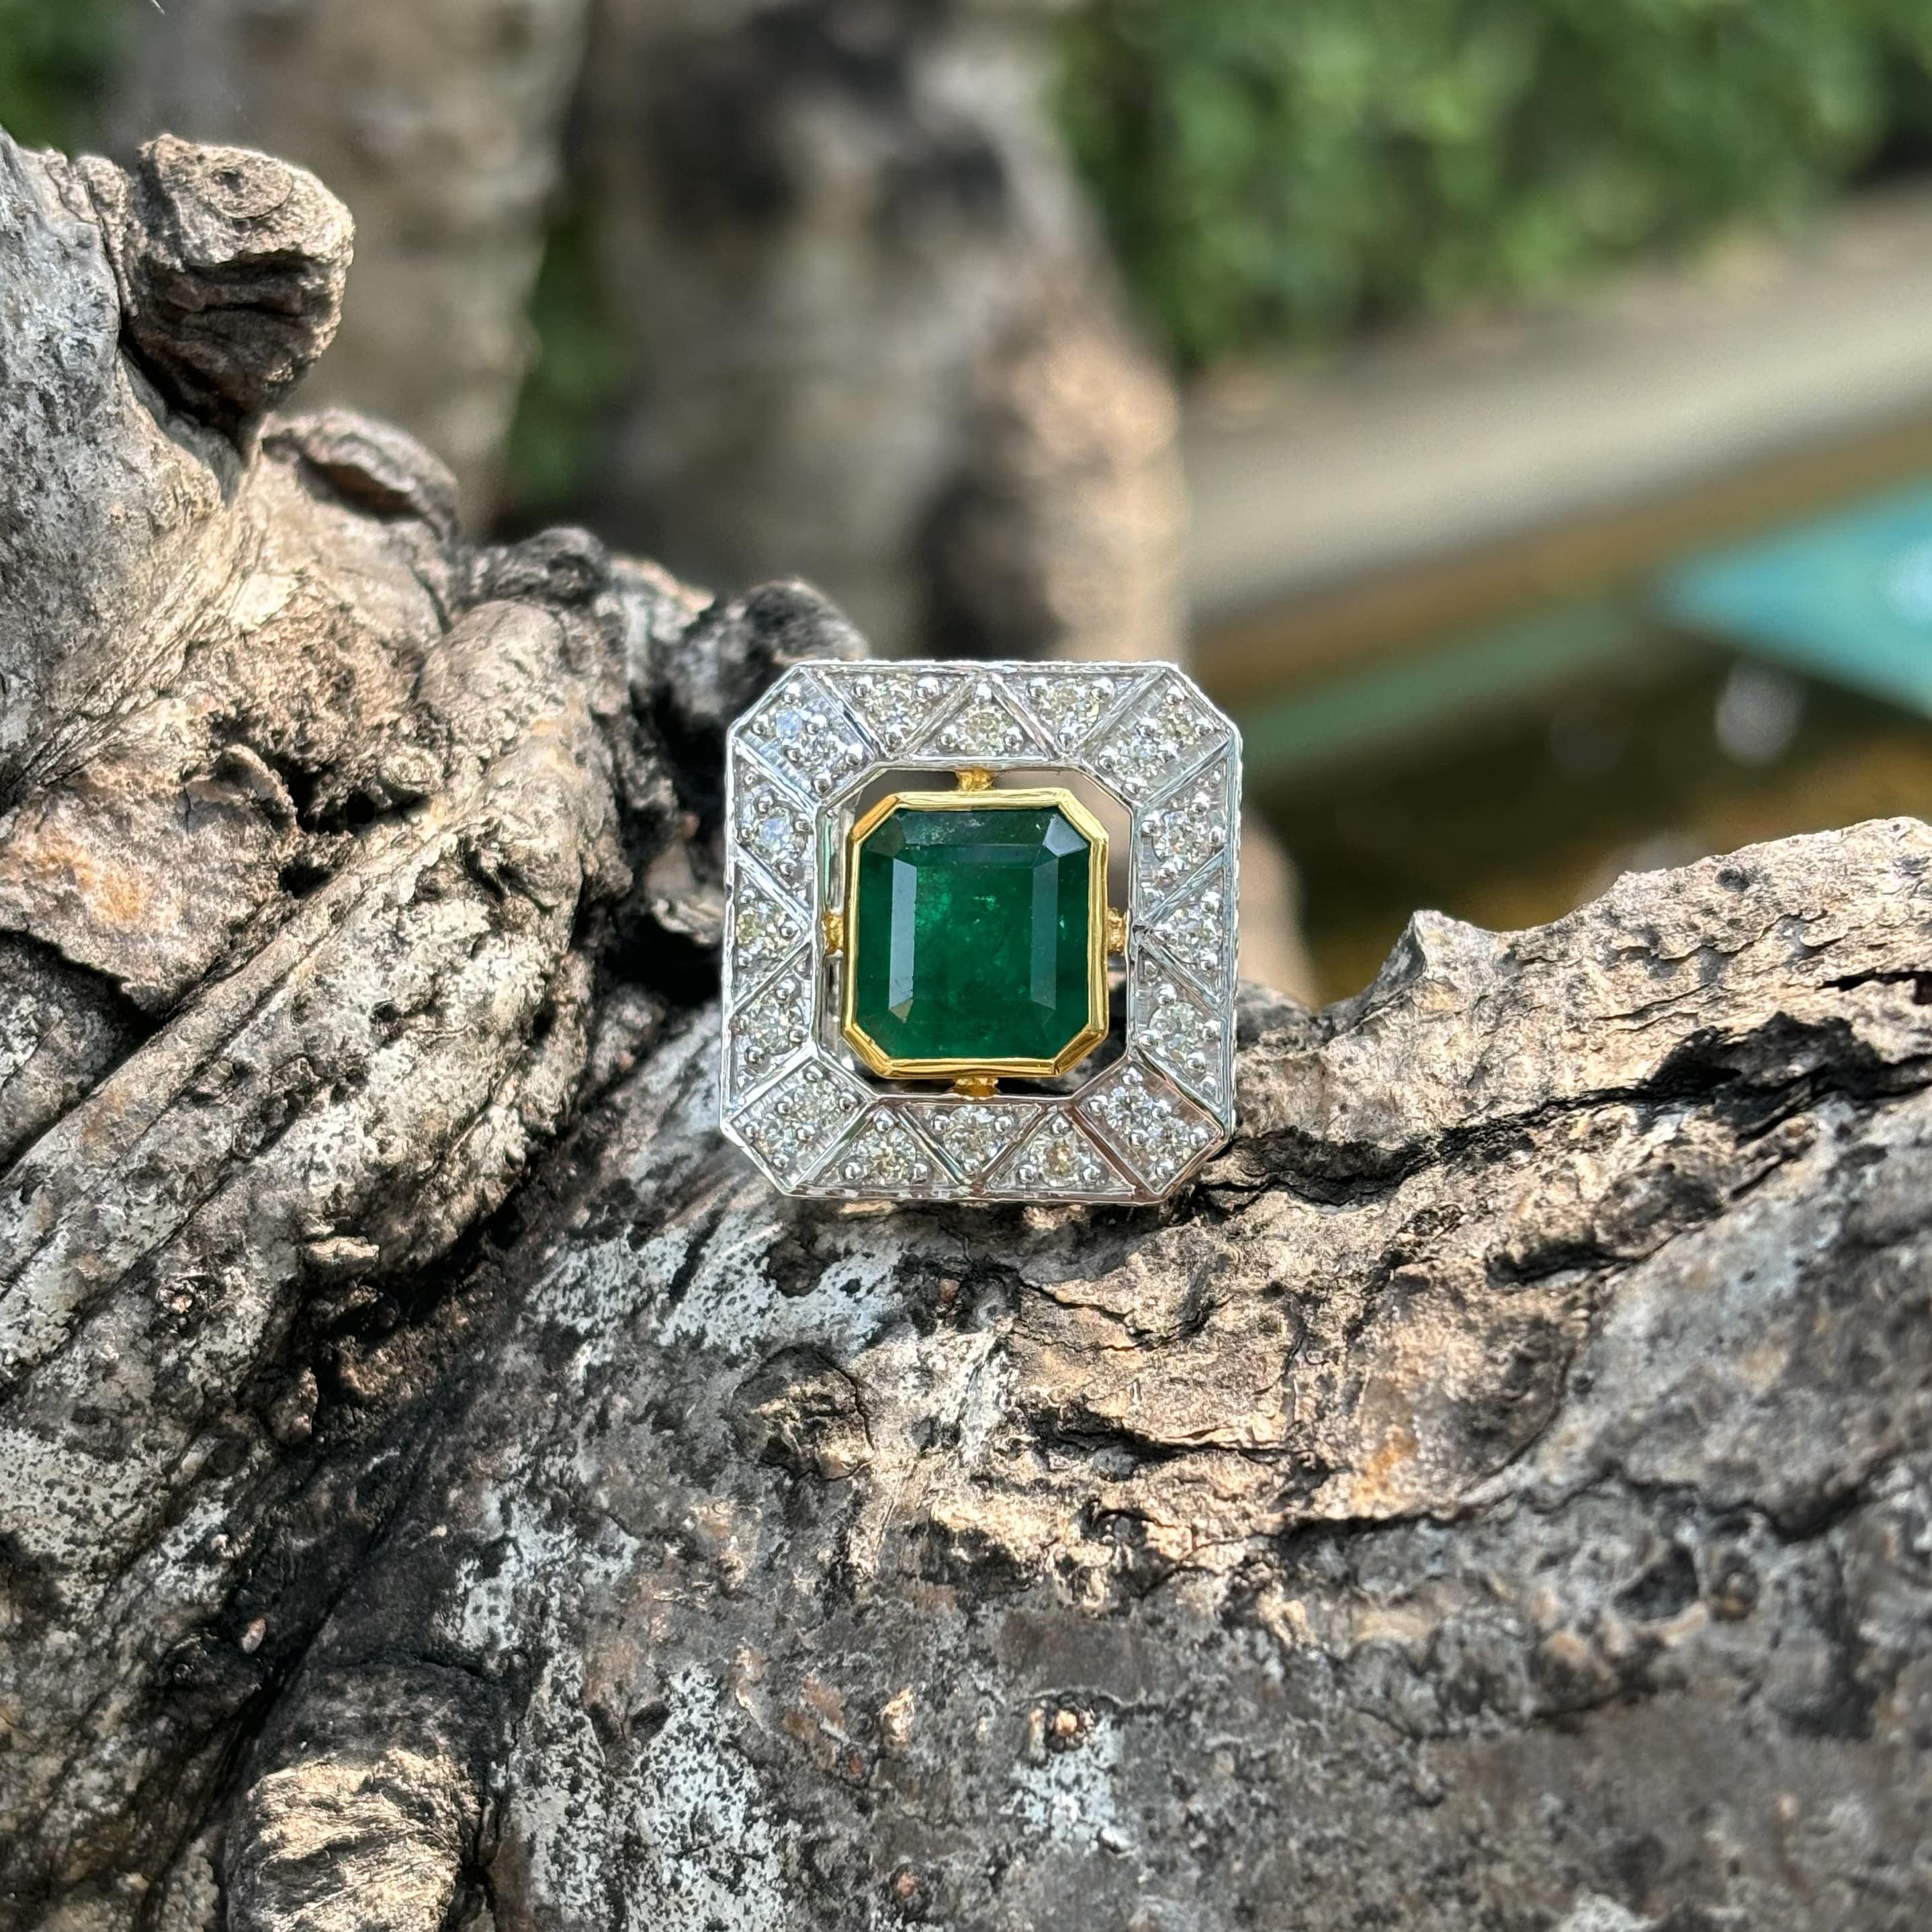 Der Inbegriff von Luxus und Raffinesse ist der atemberaubende, vom Art Deco inspirierte Emerald Statement Ring, ein wahres Wunderwerk in der Welt des edlen Schmucks. Dieses extravagante, mit Präzision und Leidenschaft gefertigte Stück strahlt aus